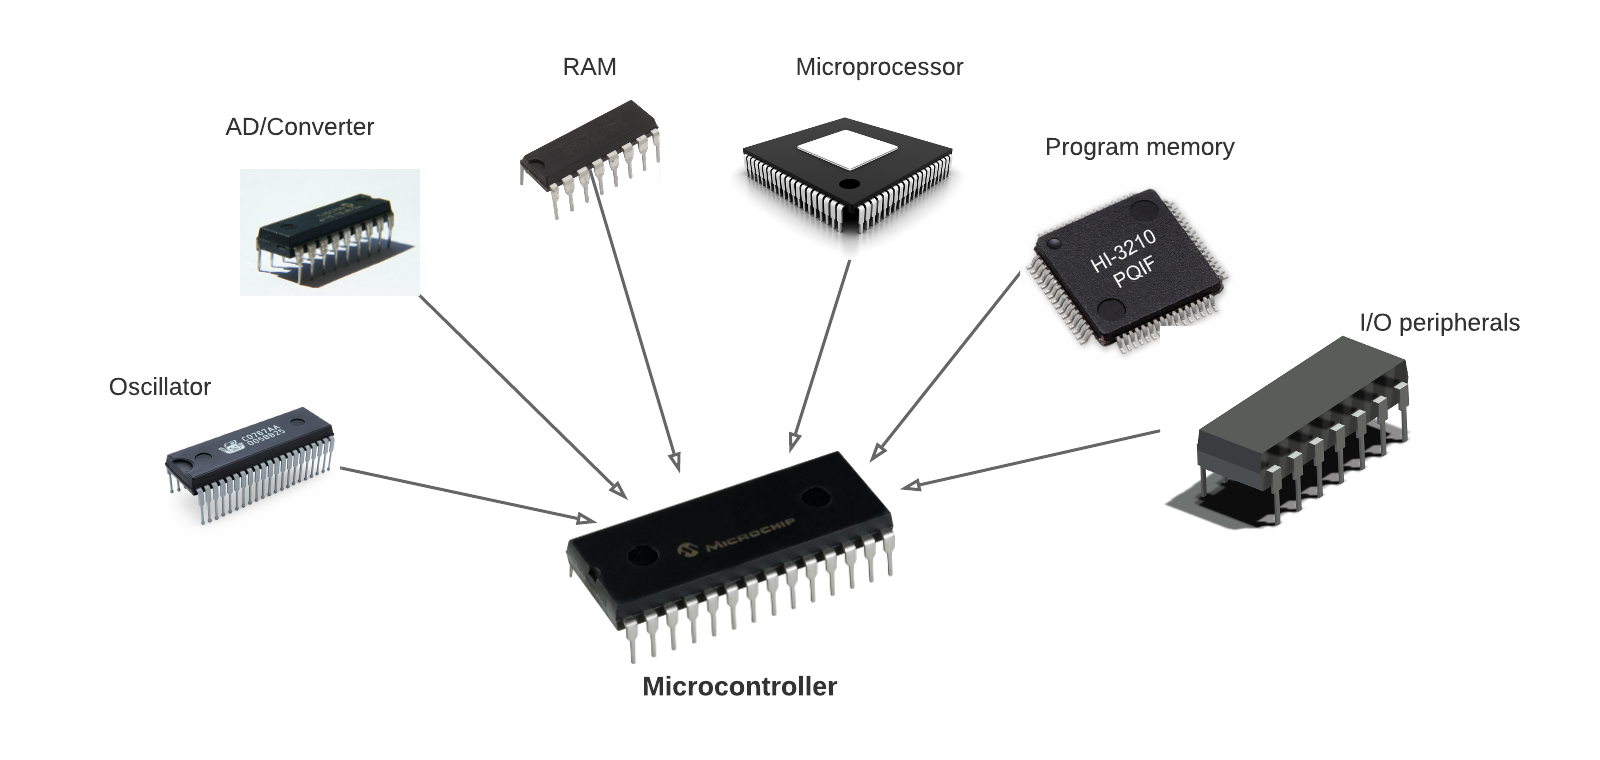 Microcontroladores